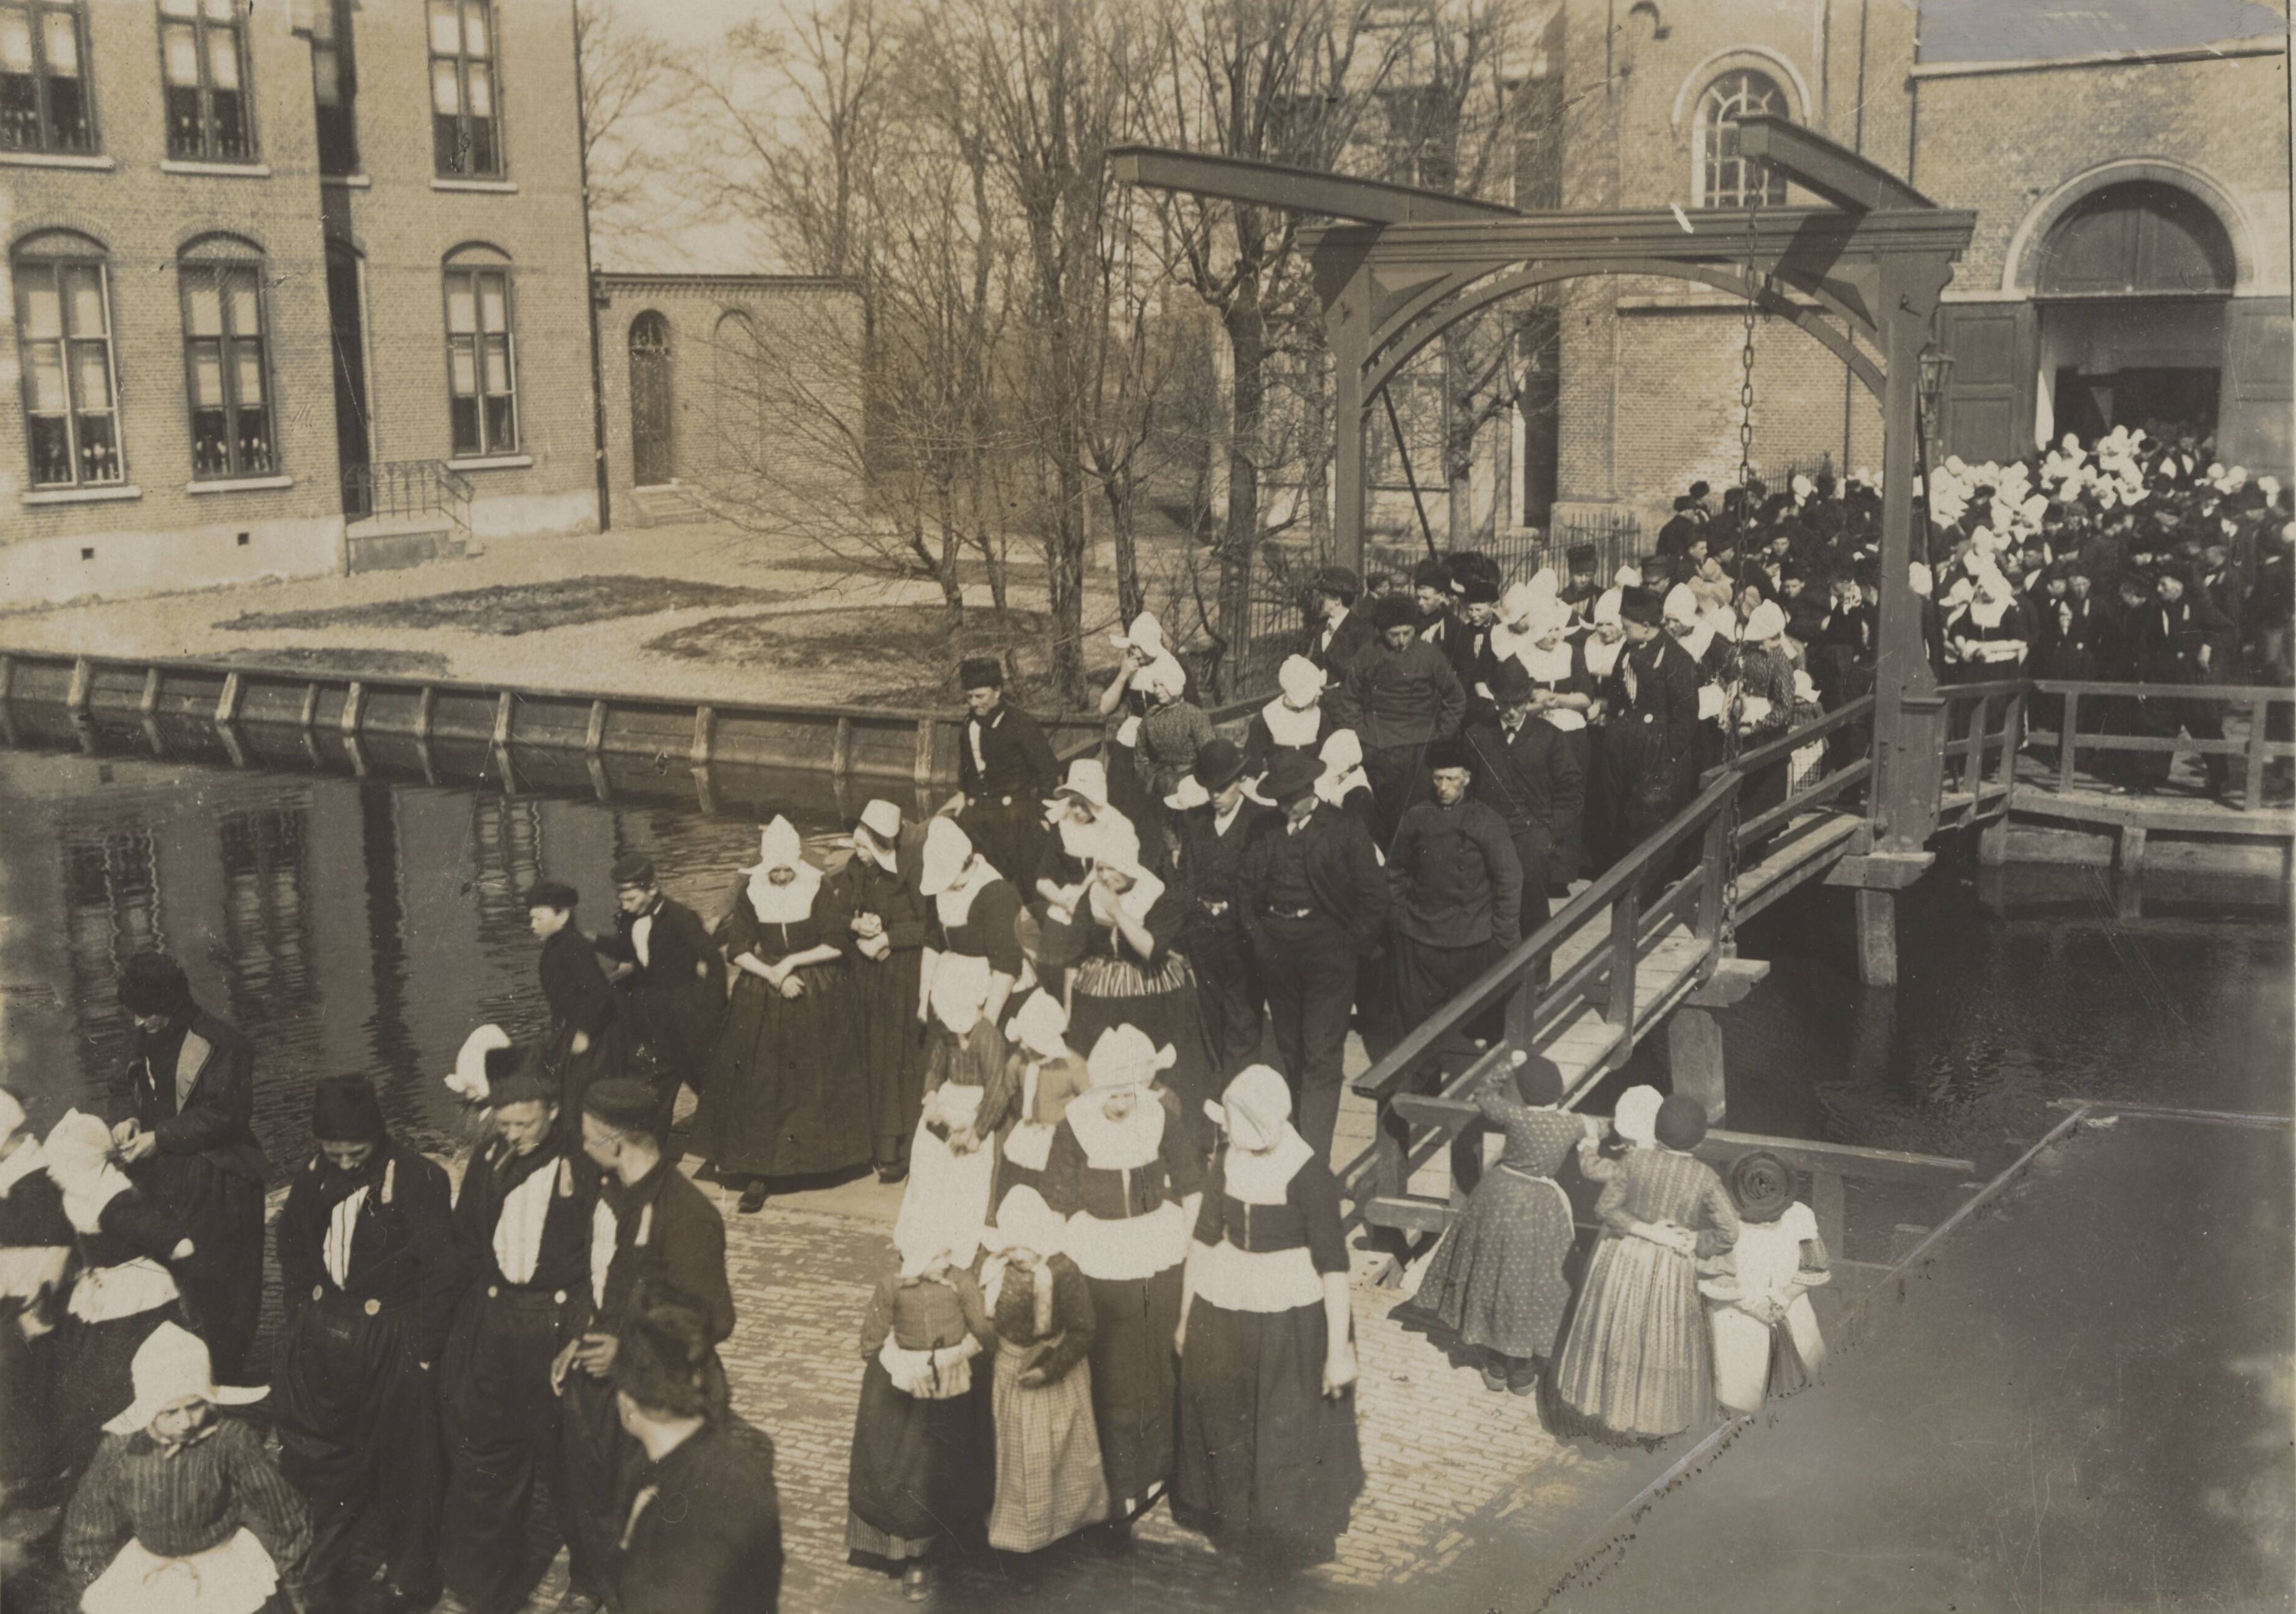 1922 - Kerkgangers verlaten een kerk in Volendam tijdens Pasen